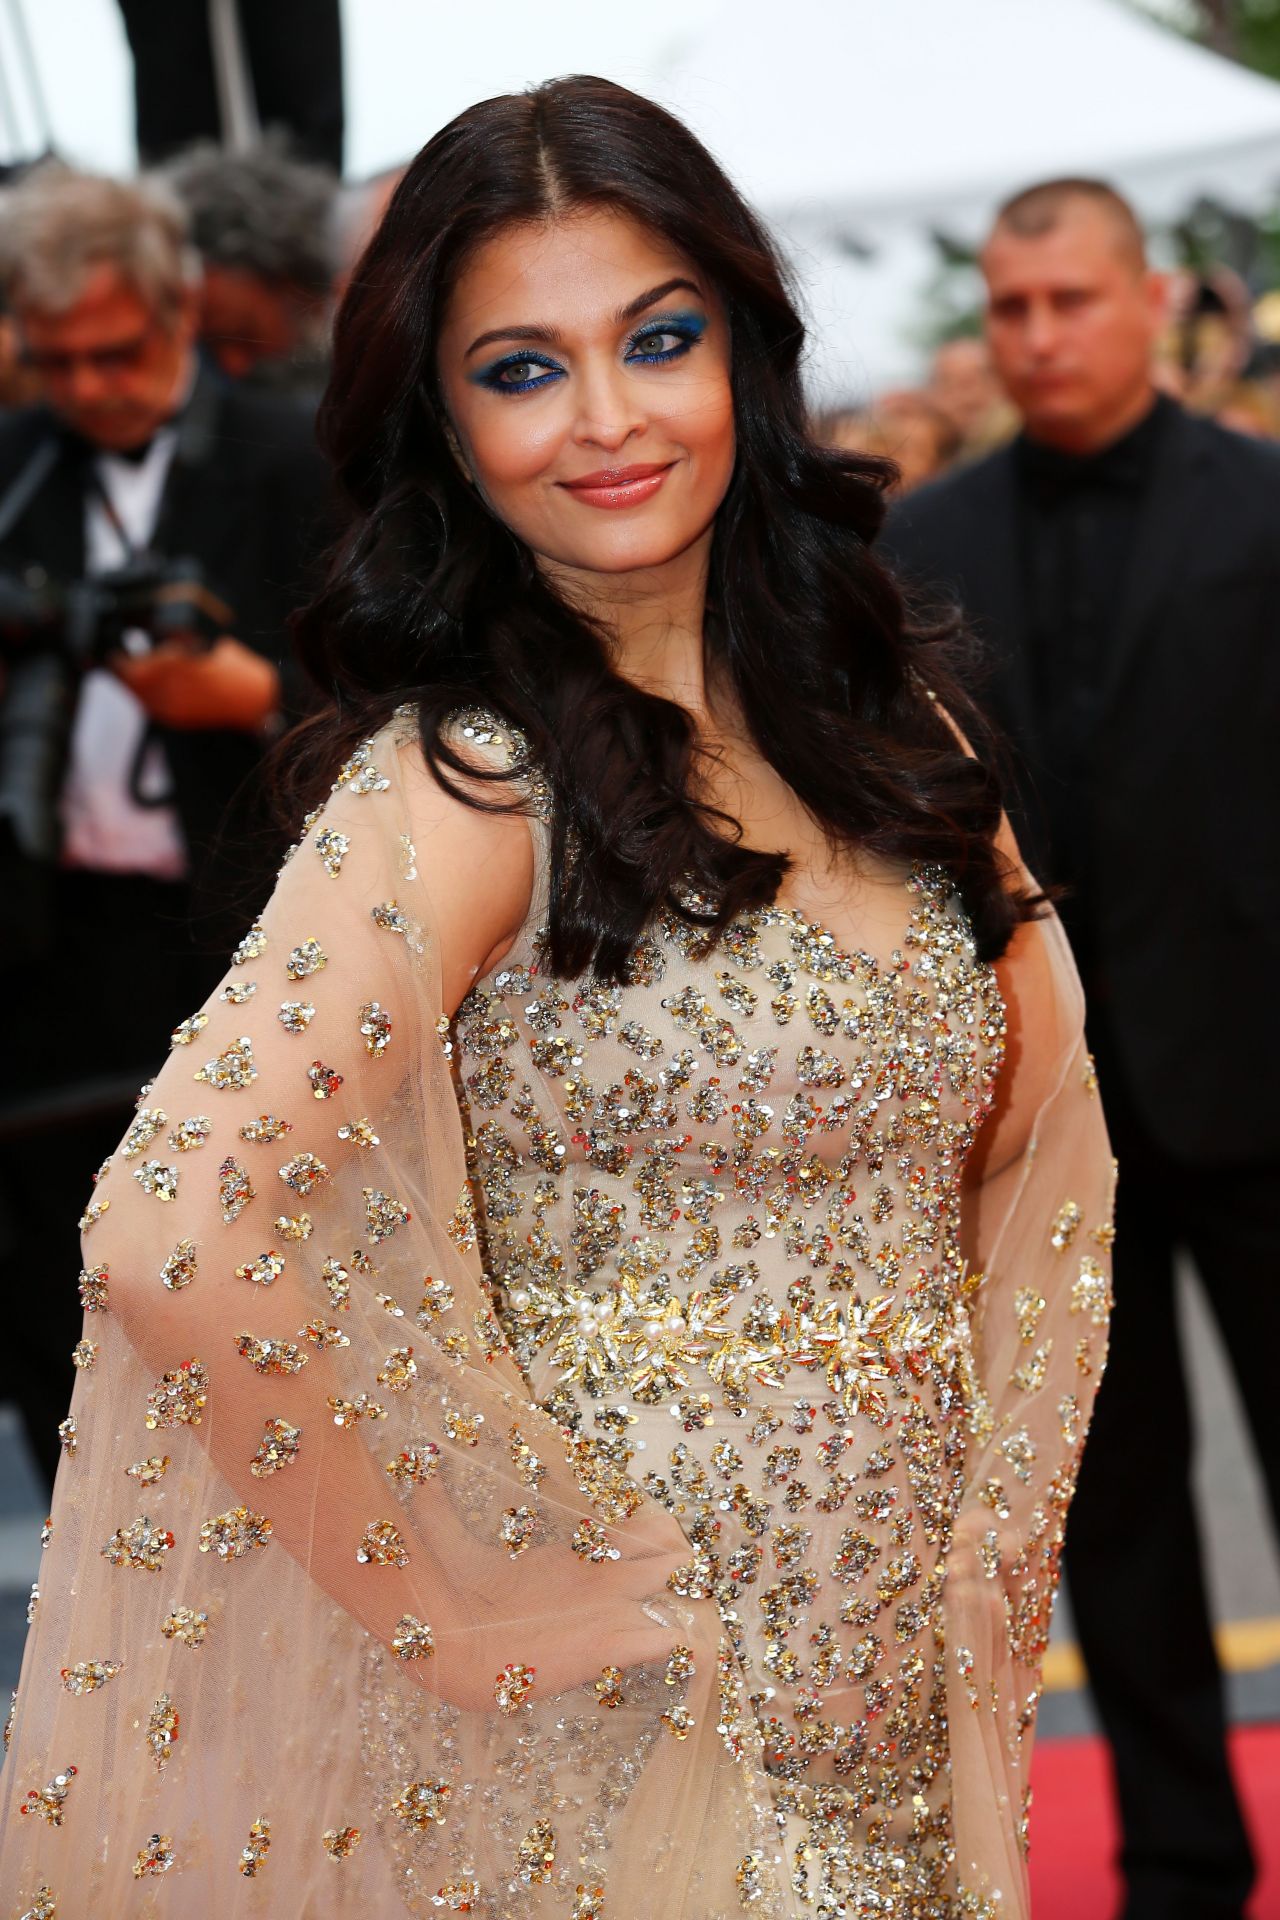 Aishwarya Rai Bachchan Style, Clothes, Outfits and Fashion • CelebMafia